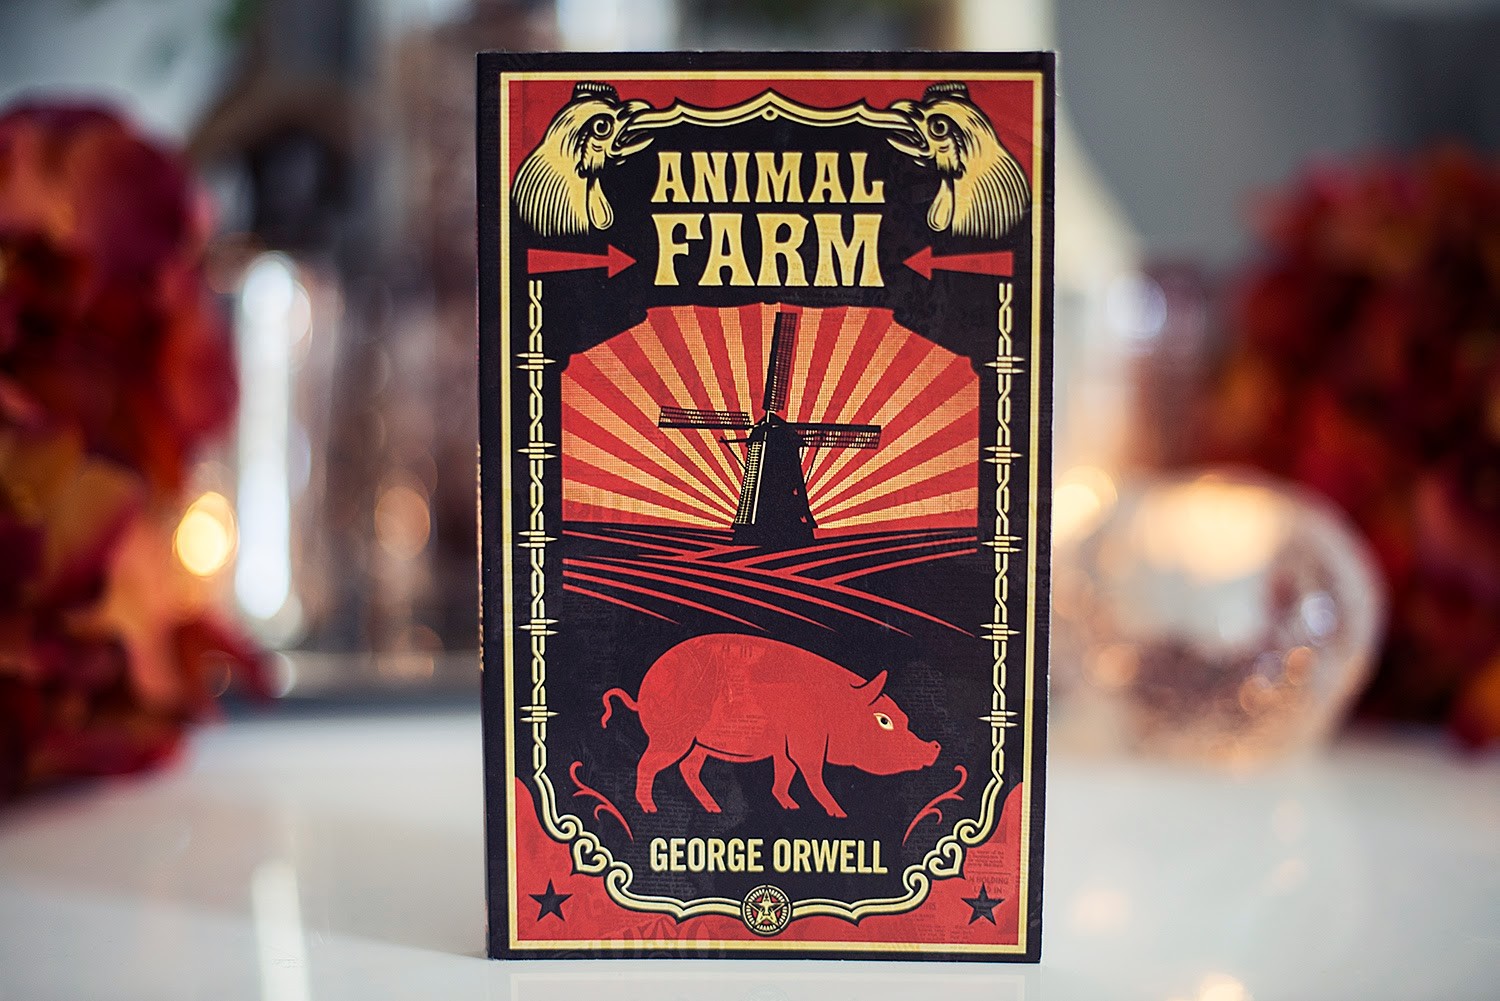 Animal Farm, by George Orwell